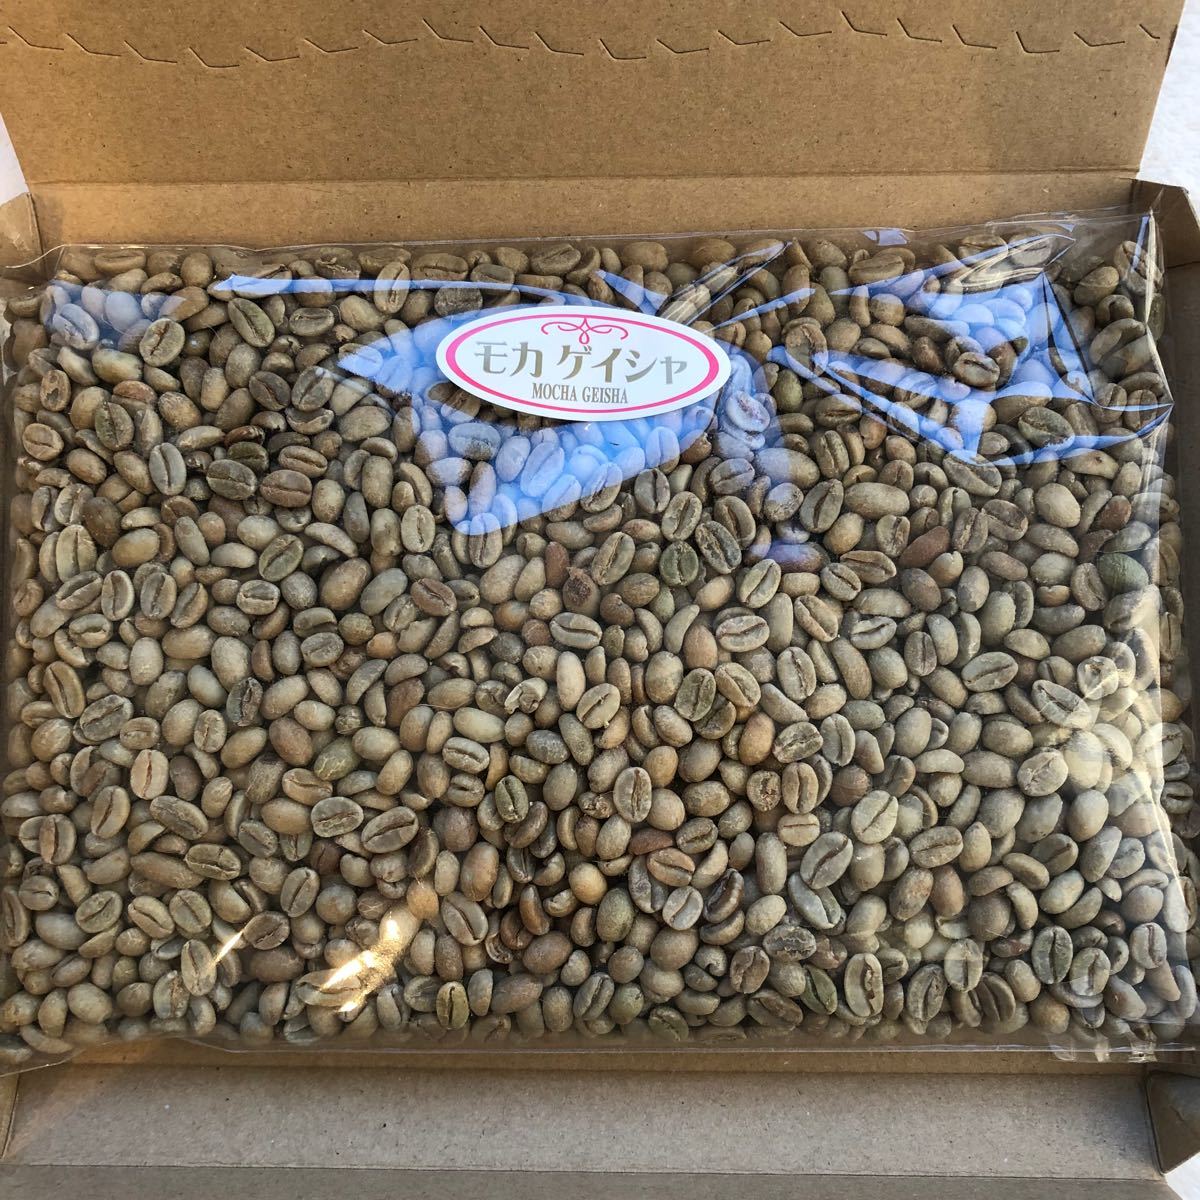 コーヒー豆 エチオピア モカ ゲイシャ 800g 焙煎用生豆 生豆 コーヒー豆 コーヒー生豆